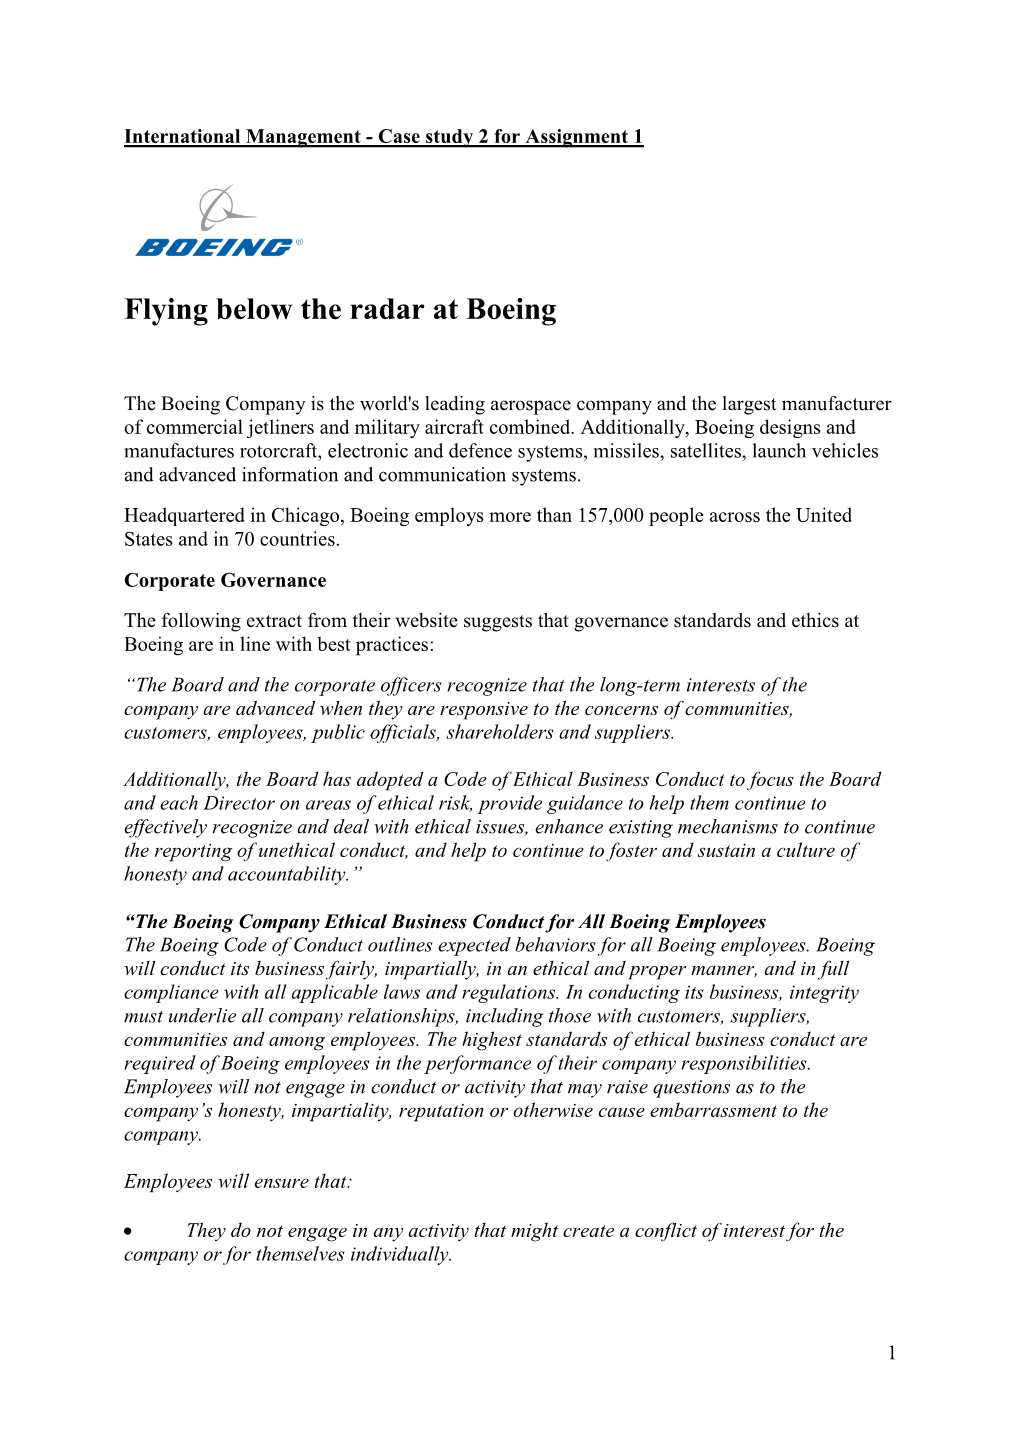 Flying Below the Radar at Boeing